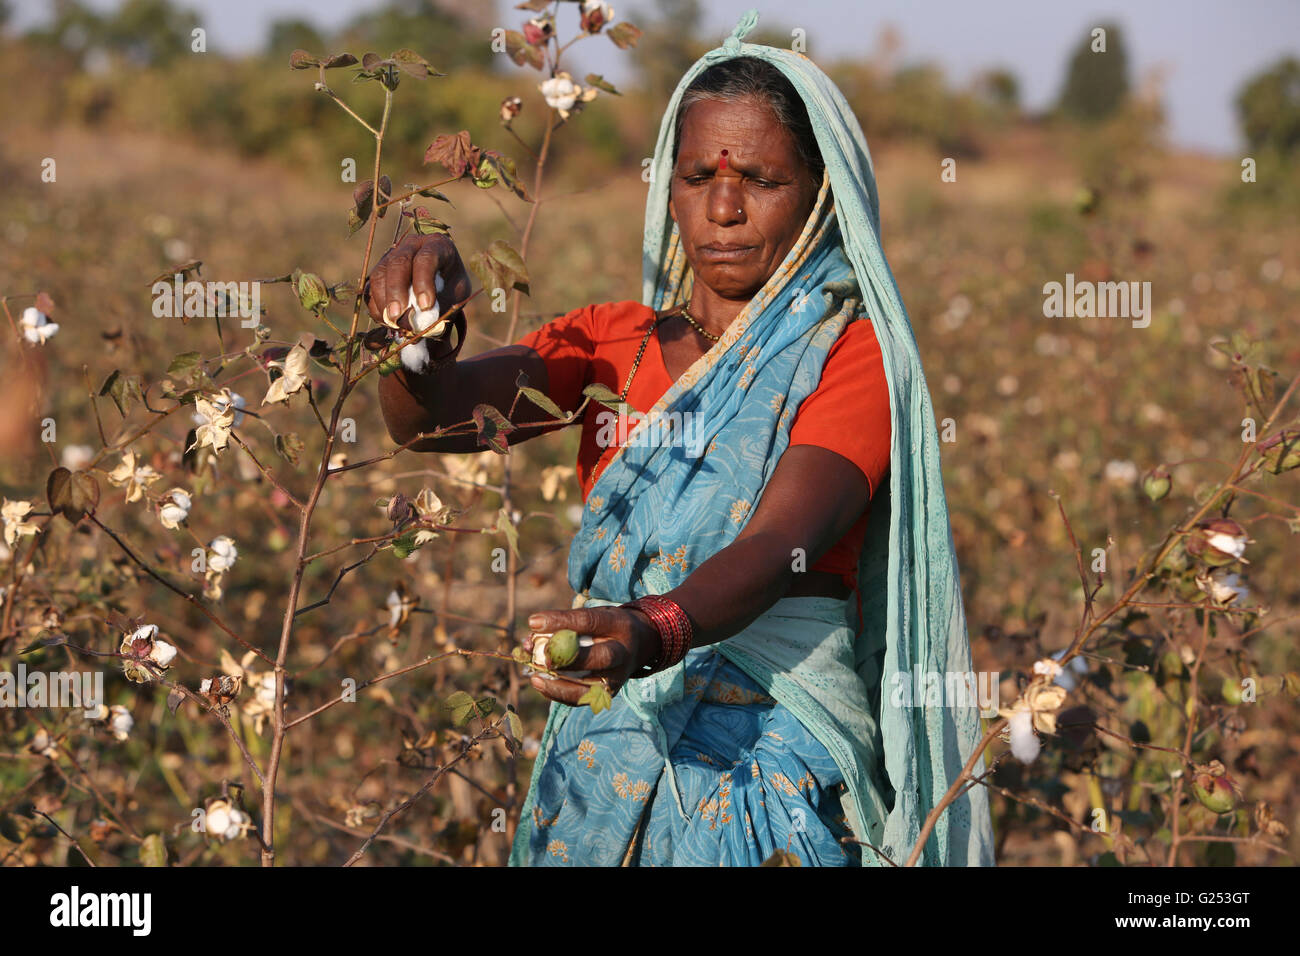 PRADHAN TRIBE - Tribal women picking cotton. Pradhan boti Village, Kalam Taluka, in Maharashtra in India. Rural faces of India Stock Photo